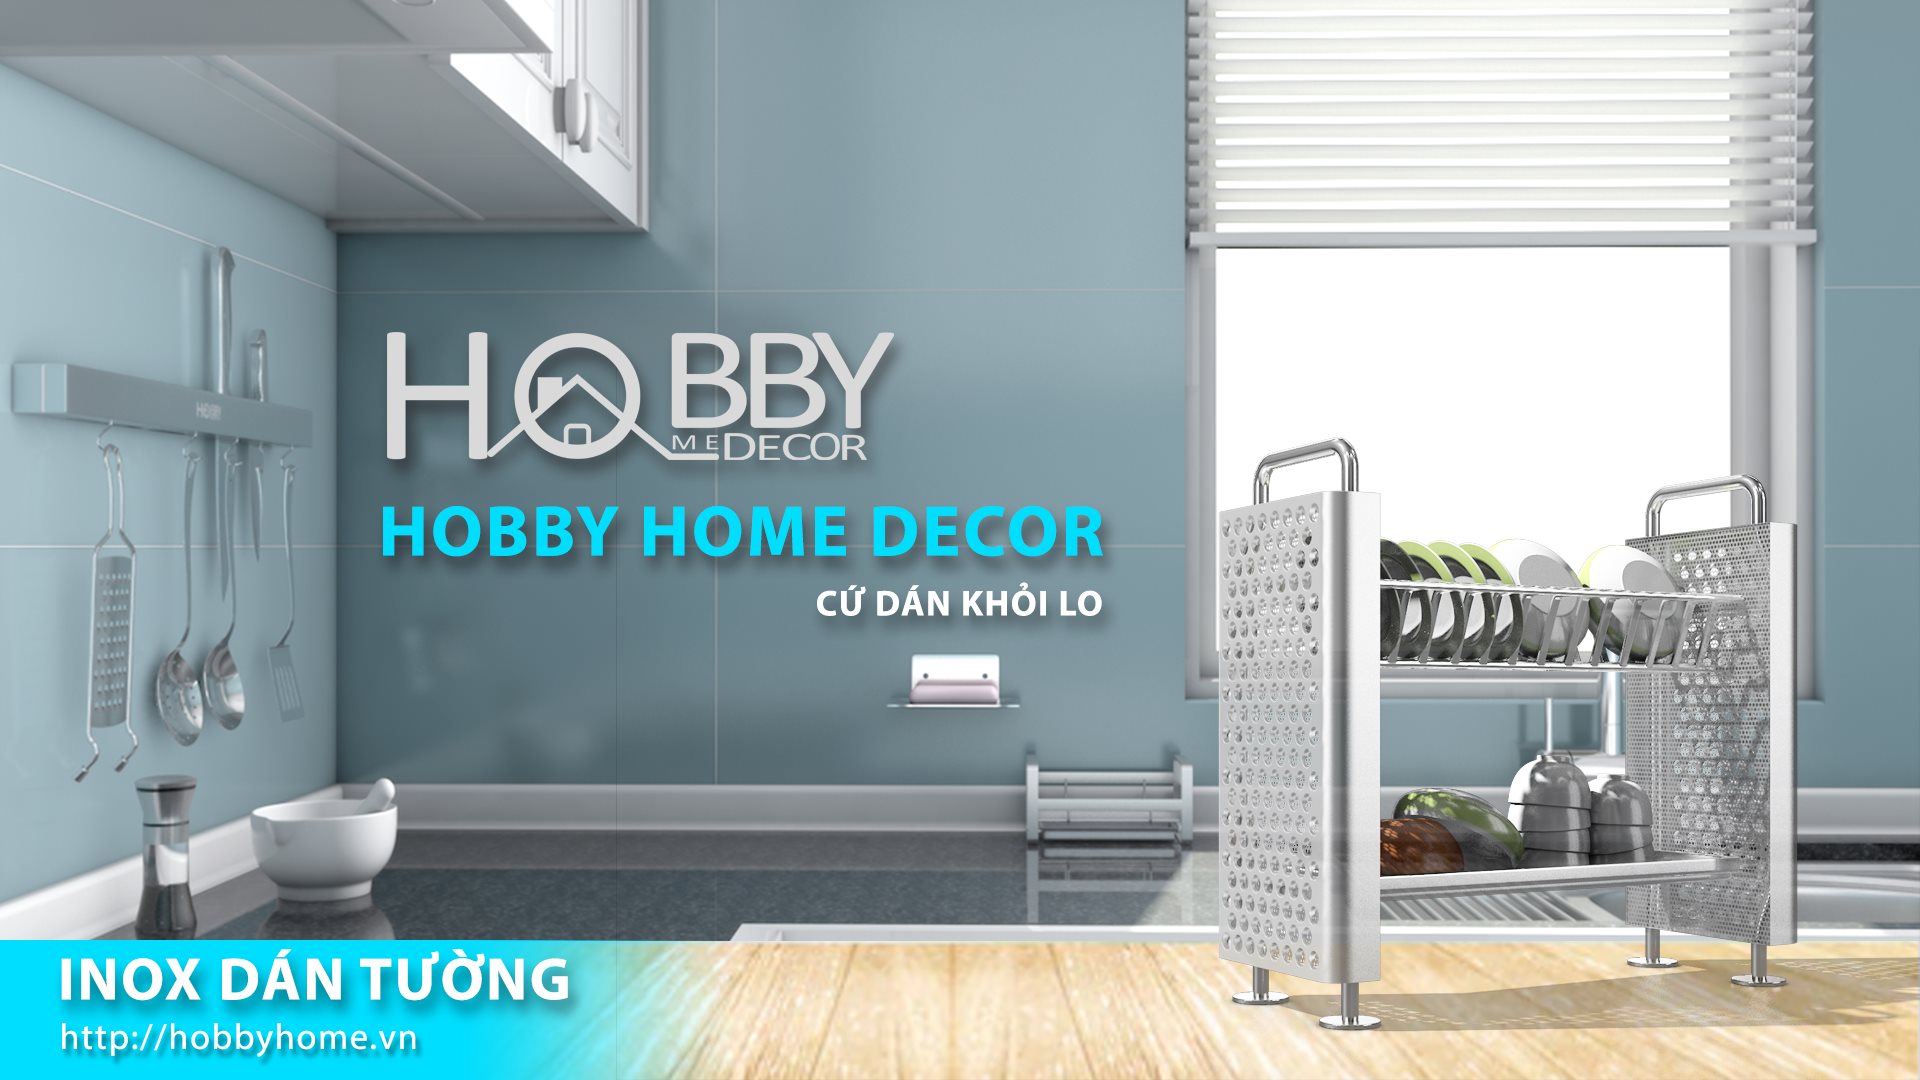 Copy of Hobby Home Shopee Điểm Qua Top 10 Phụ Kiện Nhà Tắm Cao Cấp, Hiện Đại Nhất Hiện Nay Đang Được Nhiều Người Ưa Chuộng Nhất Qua Bài Viết Dưới Đây Nhé!